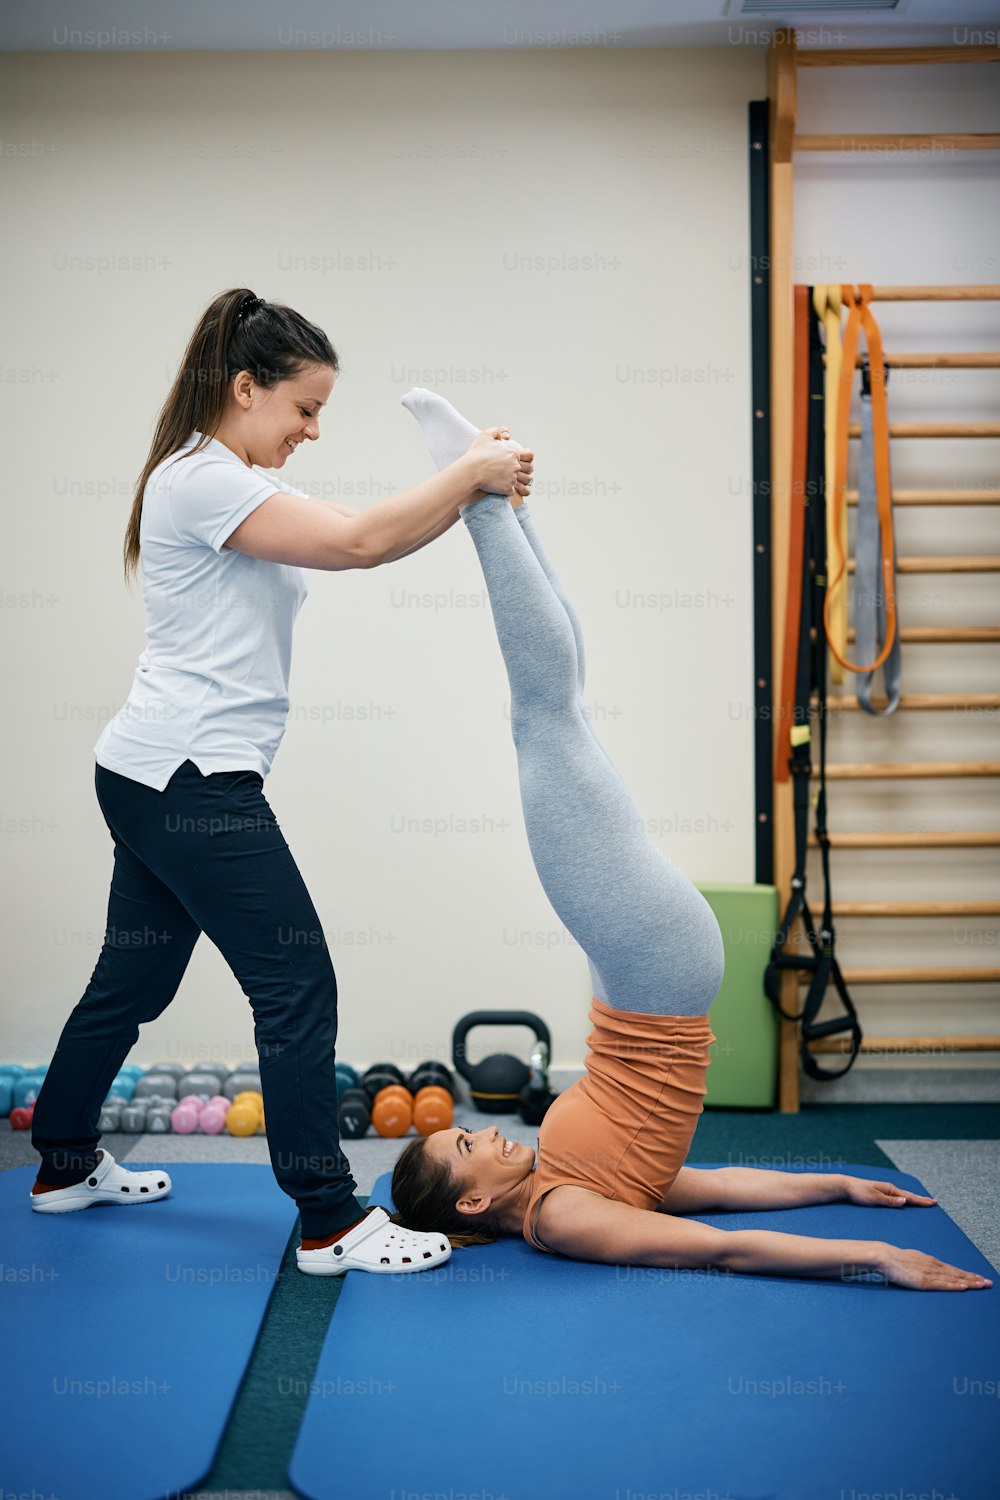 Physiothérapeute heureux aidant une jeune femme à faire de l’exercice de position sur les épaules pendant un traitement de physiothérapie au club de santé.